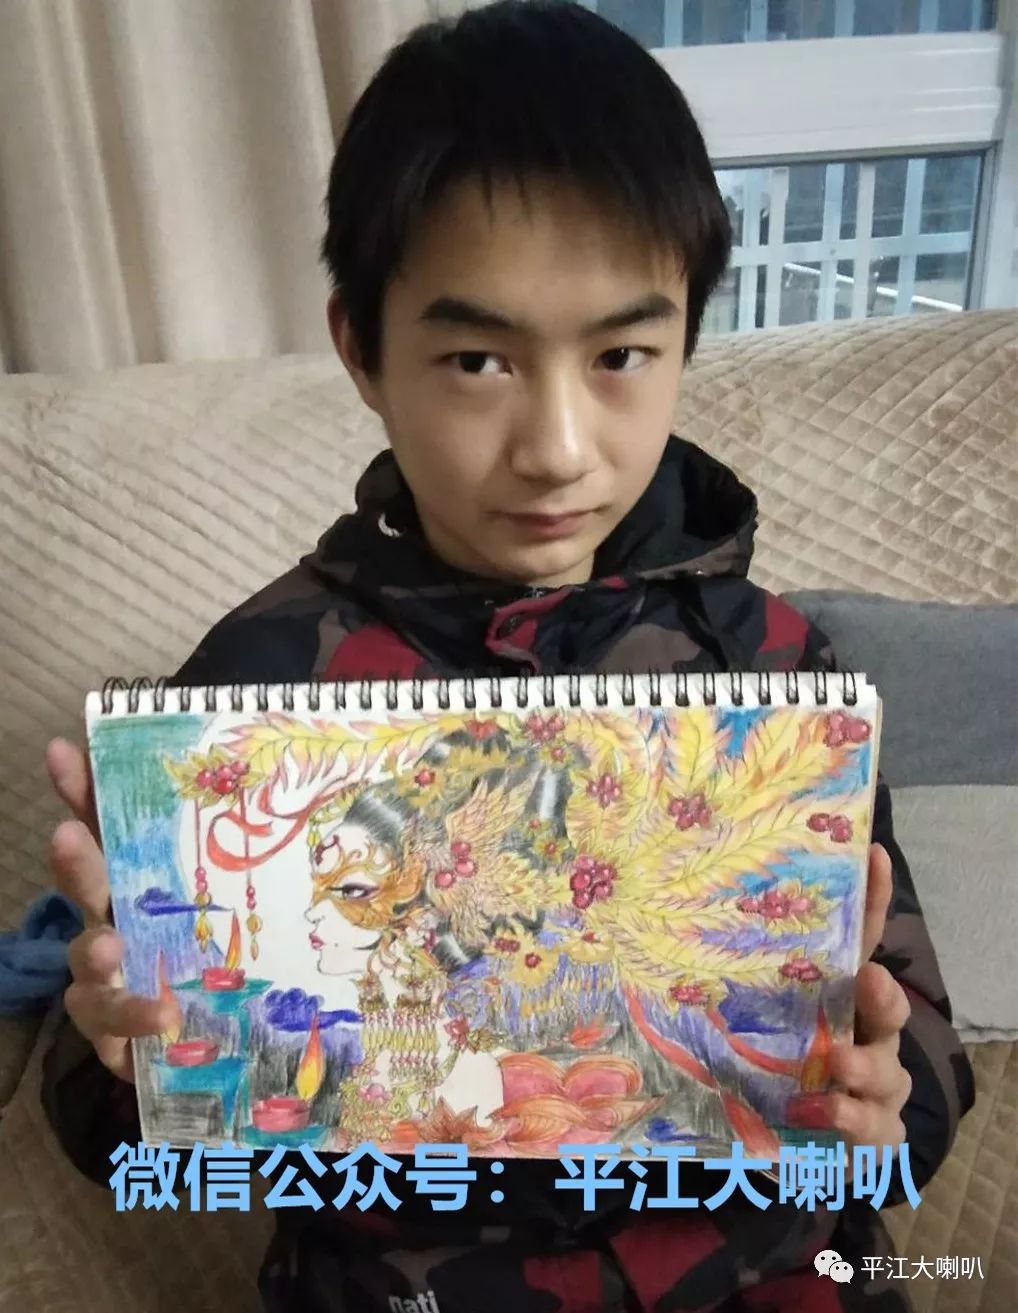 平江15岁少年爱画画,自学成才众人夸赞!